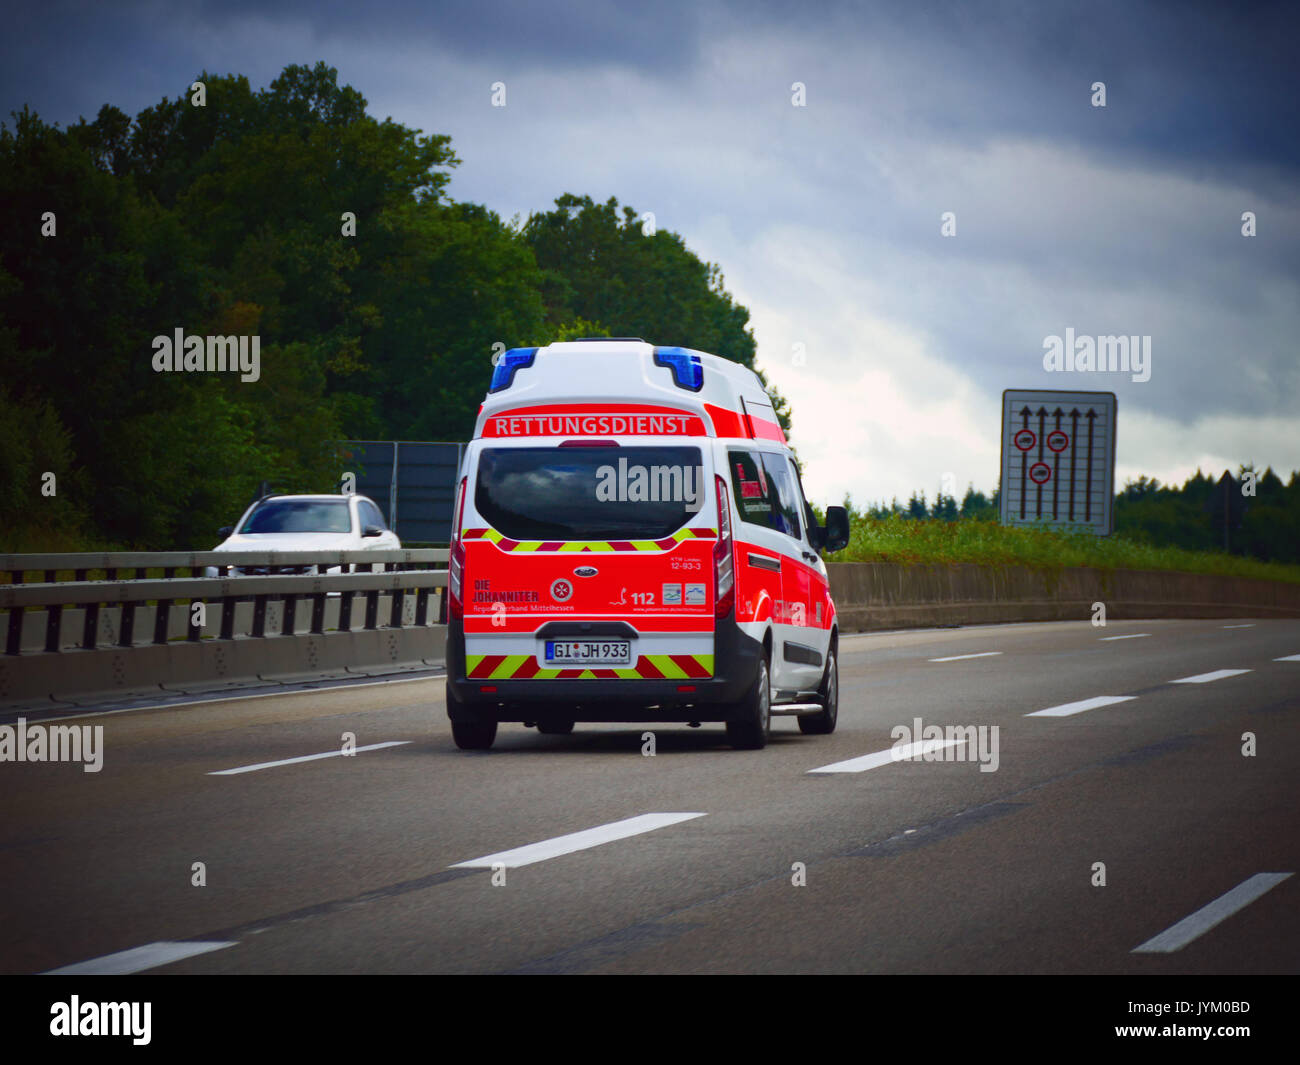 Alemania Ambulancia Medical carretilla en alemán Autobahn autopista Expressway Highway Traffic en tiempo nublado Foto de stock